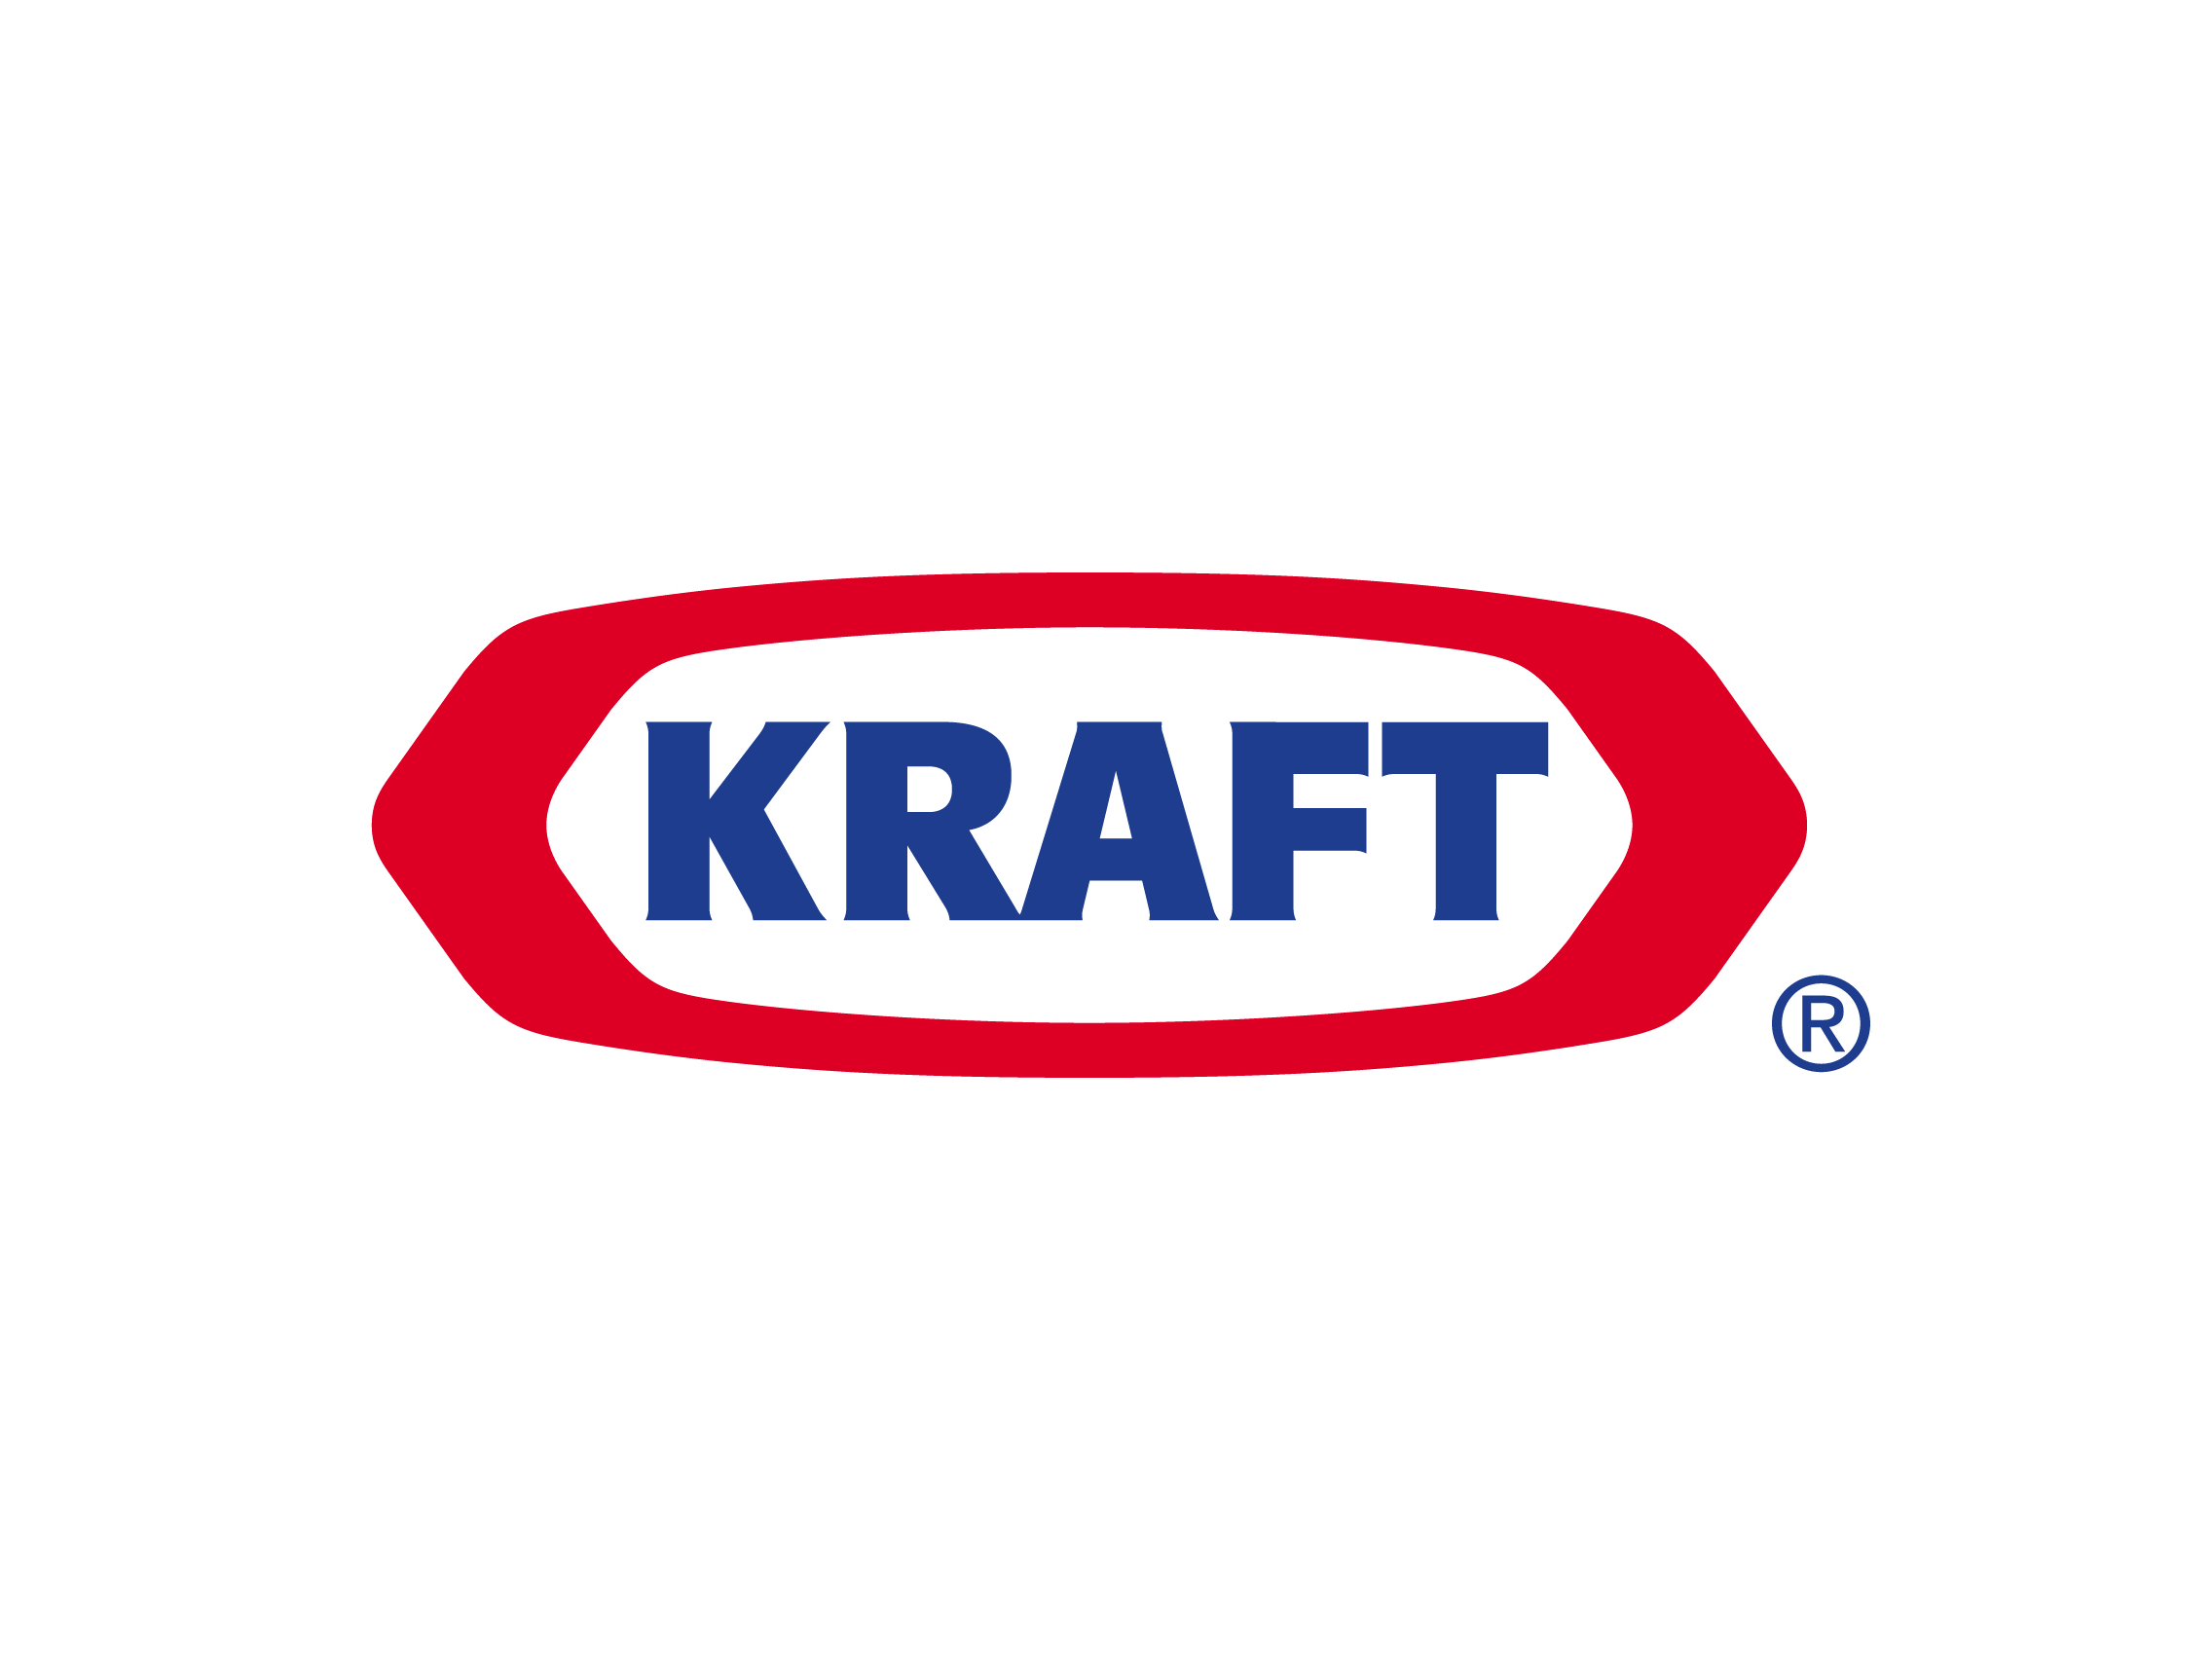 Old Food Brand Logo - Kraft logo | Logok